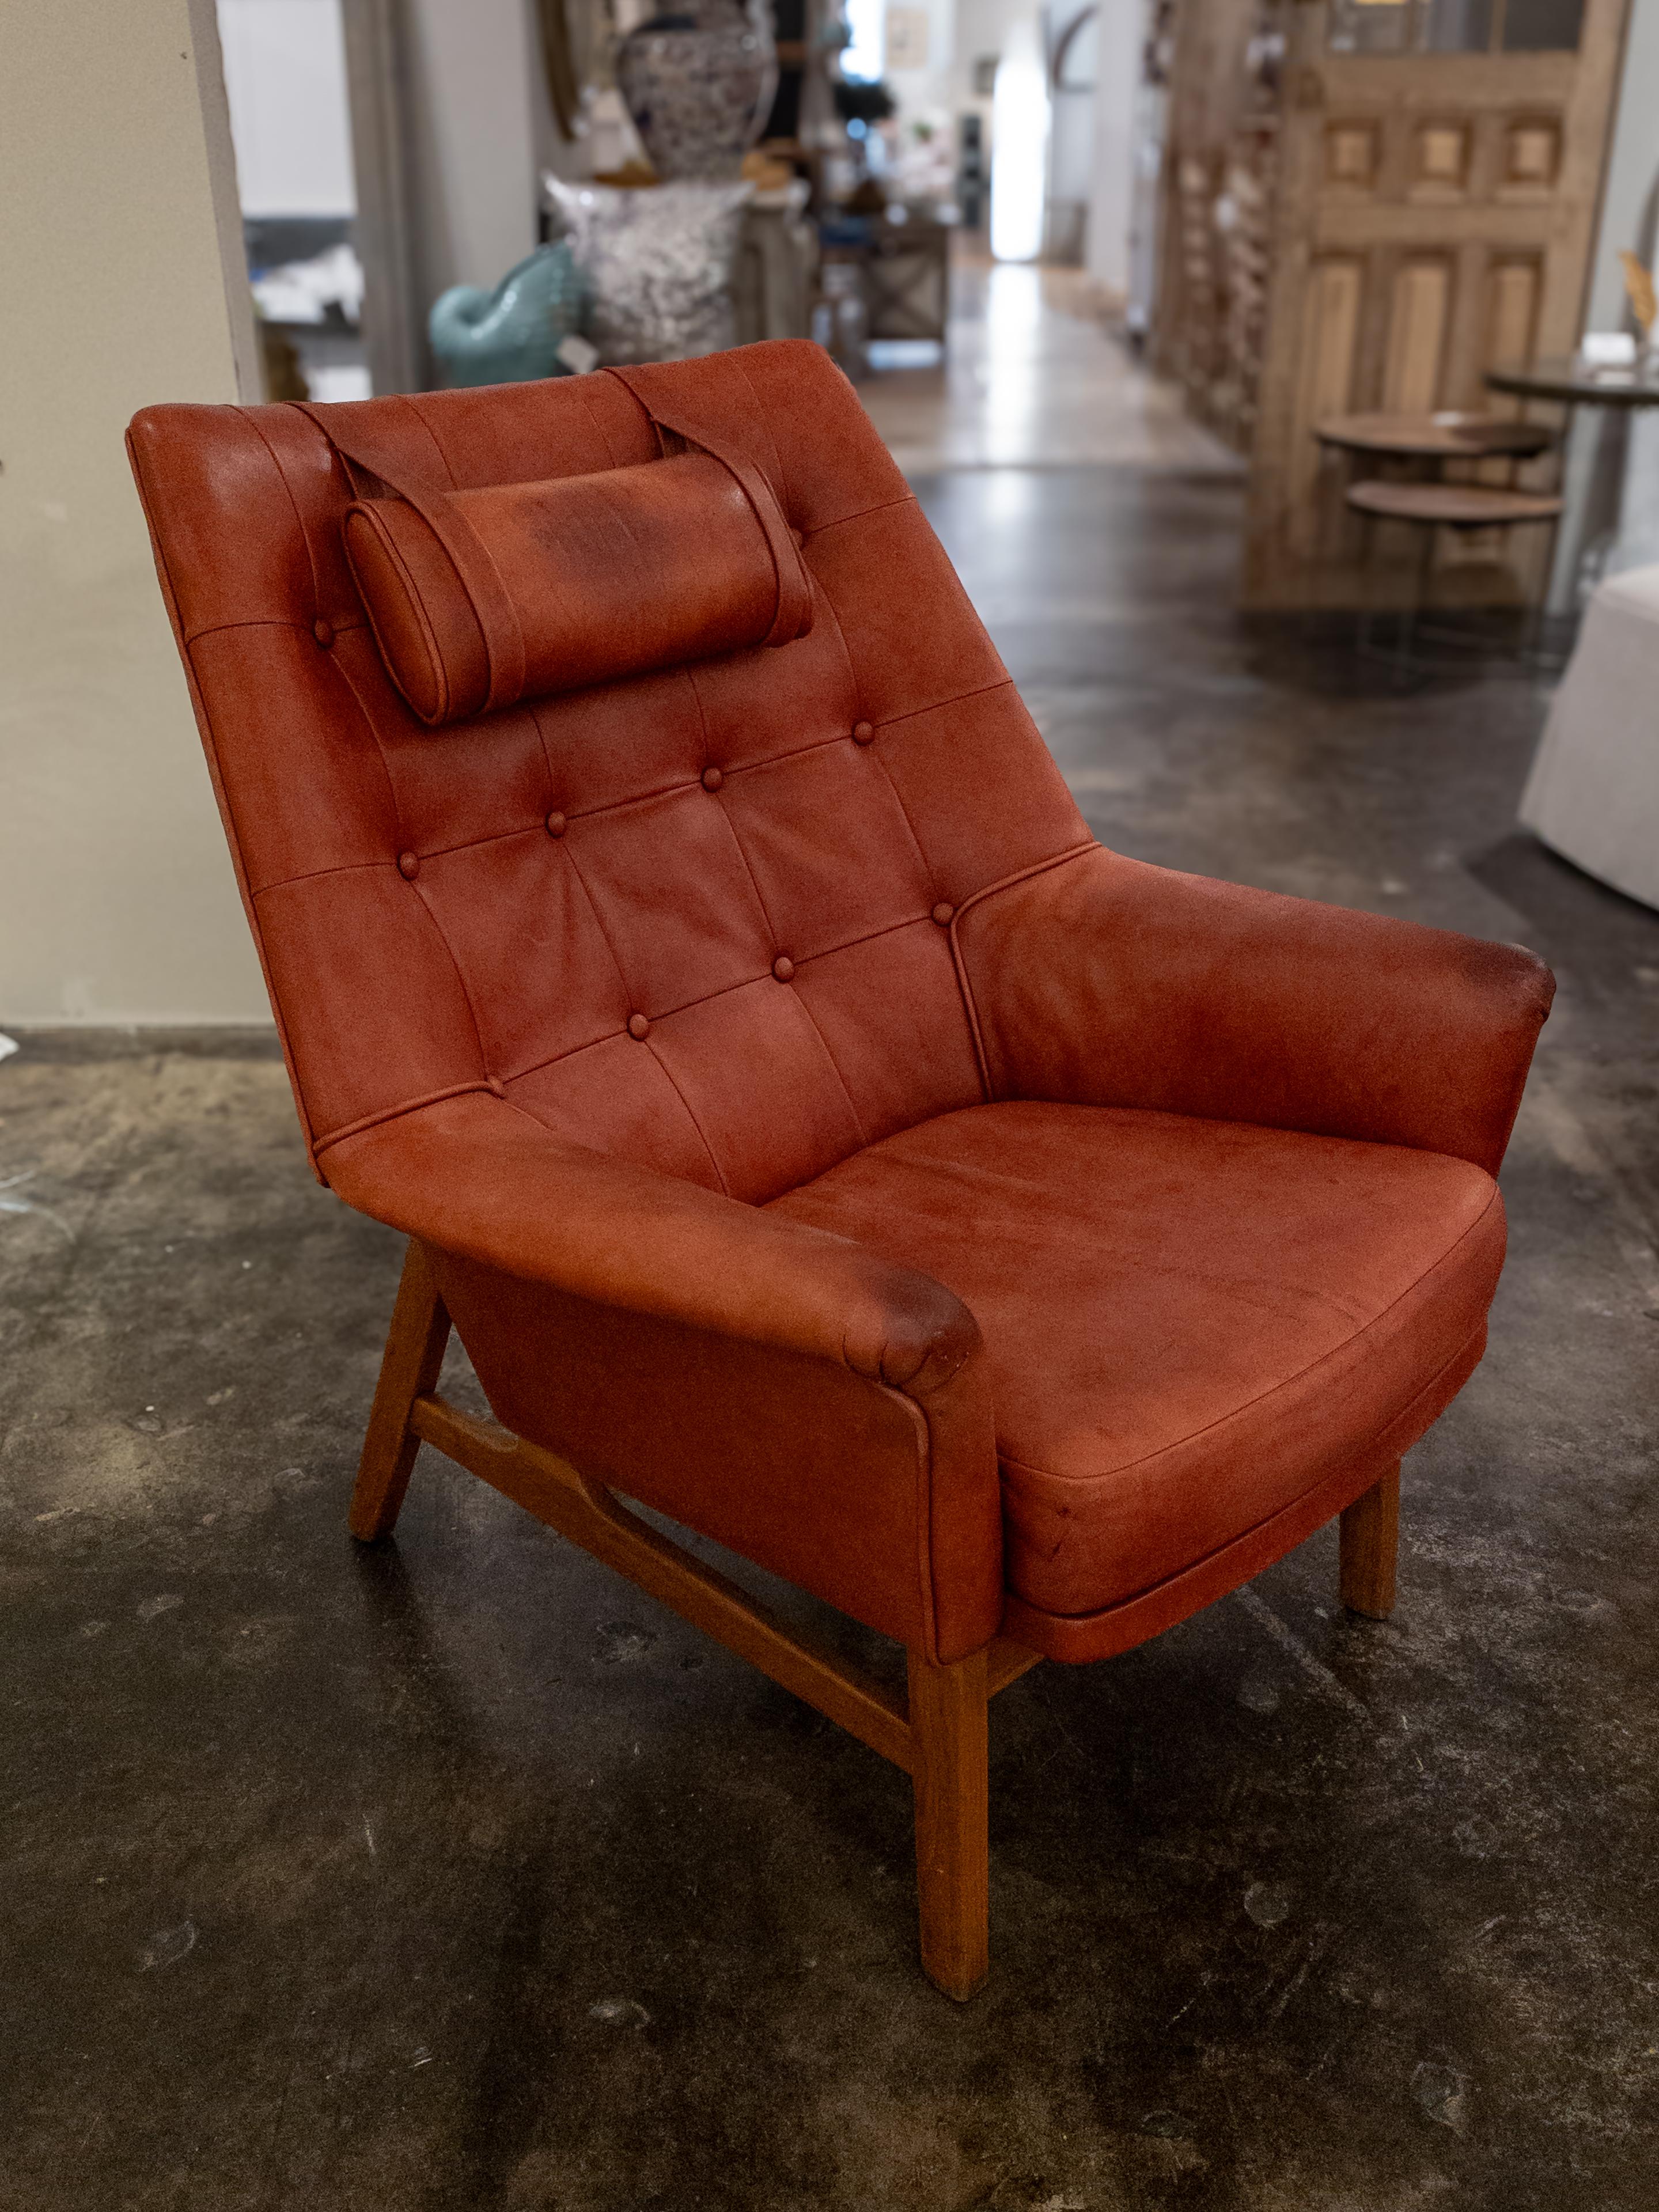 Der Tove & Edvard Kindt-Larsen Leather Lounge Chair ist ein dänisches Meisterwerk des Mid-Century-Designs, das in den 1960er Jahren von der renommierten Illuns Bolighus Dontique in Dänemark entwickelt wurde. Dieses ikonische Stück ist ein Zeugnis